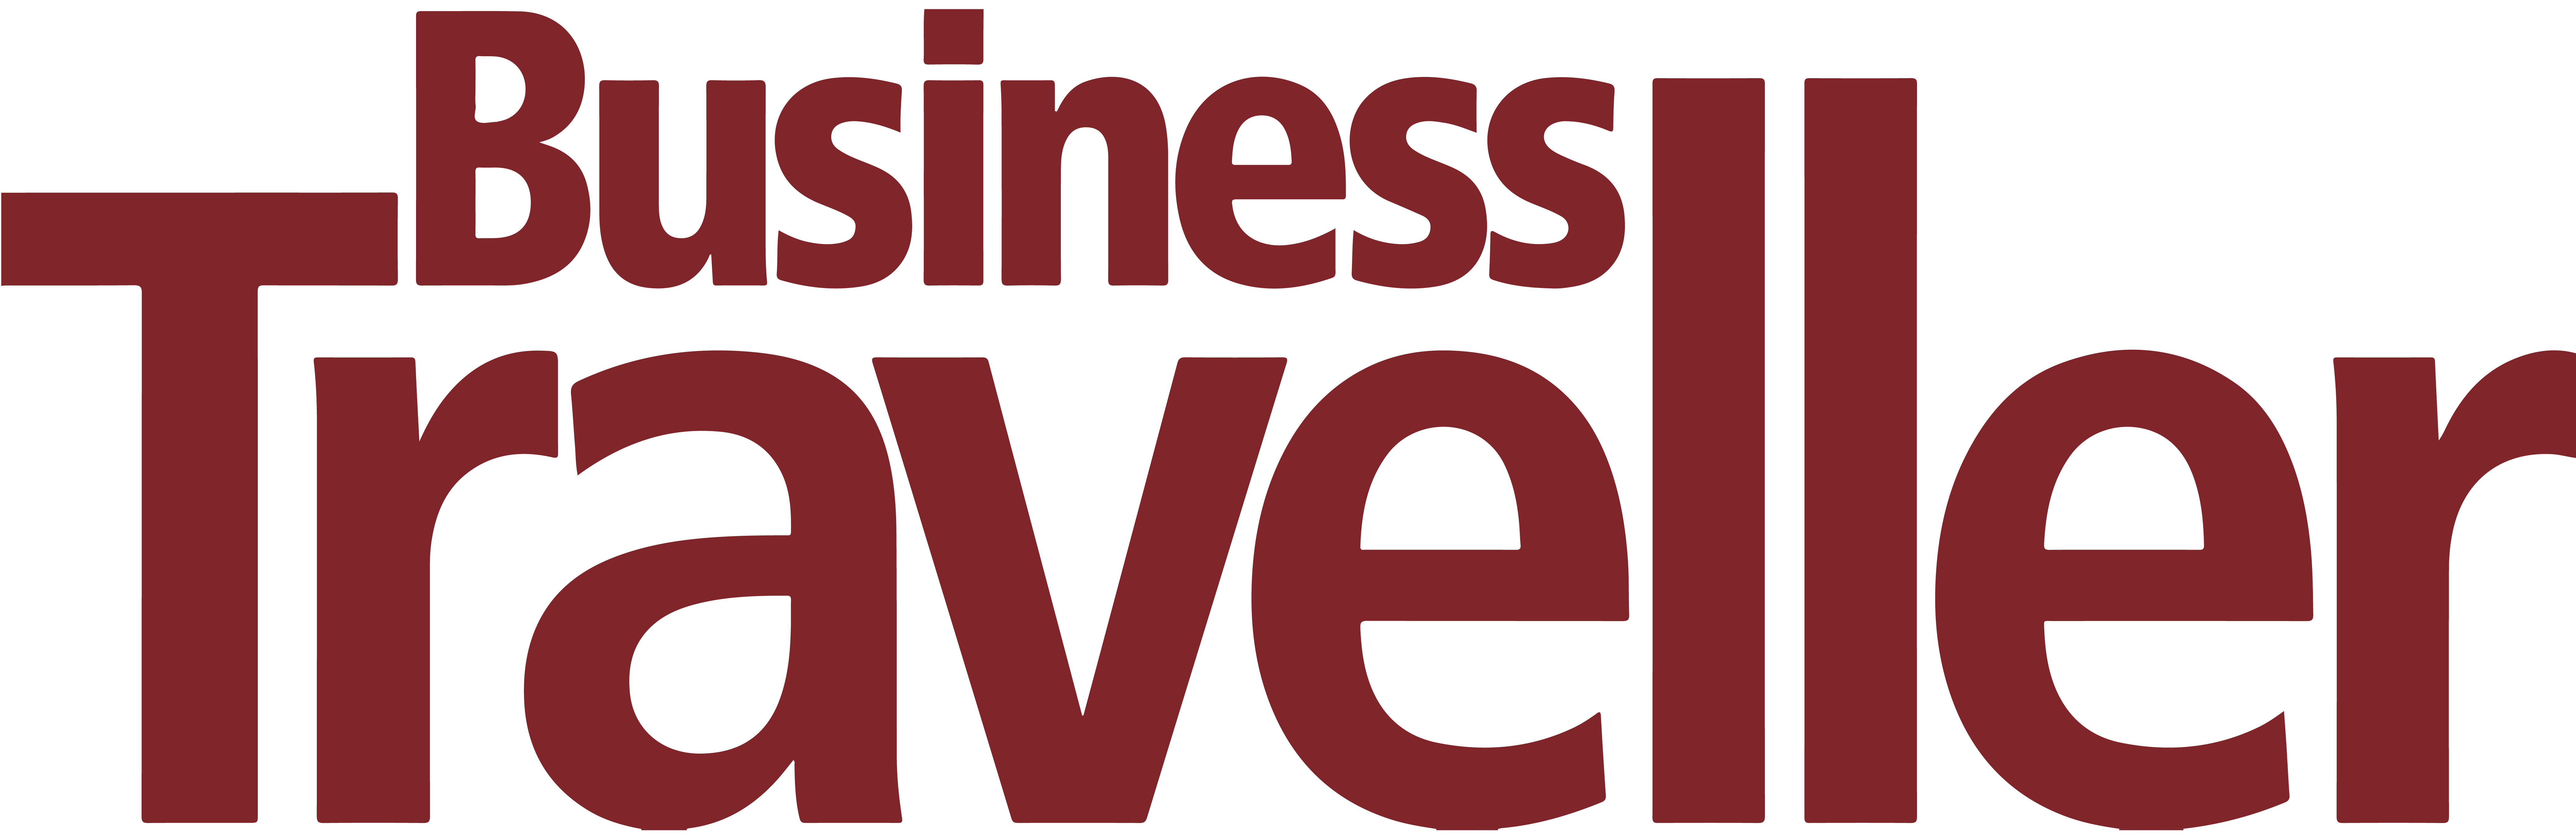 business traveller logo